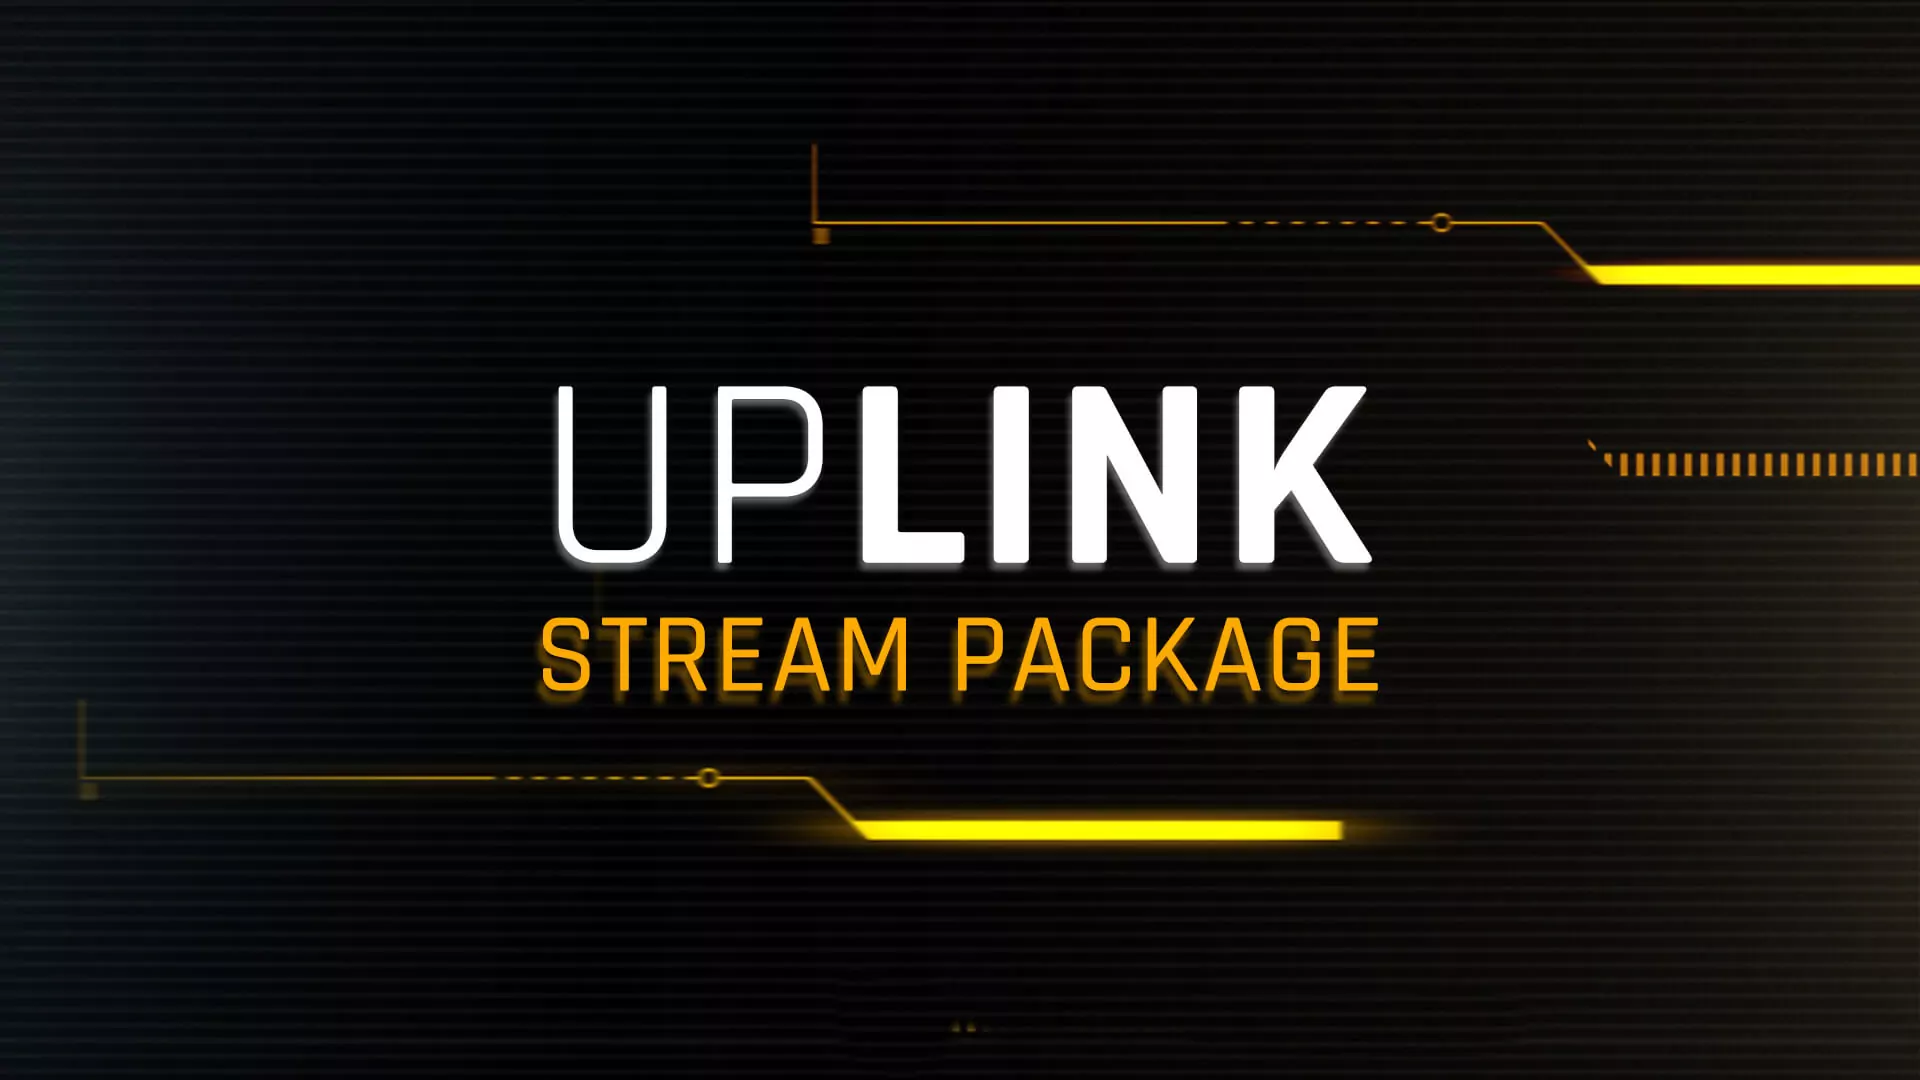 Uplink - Stream Package - Main Image